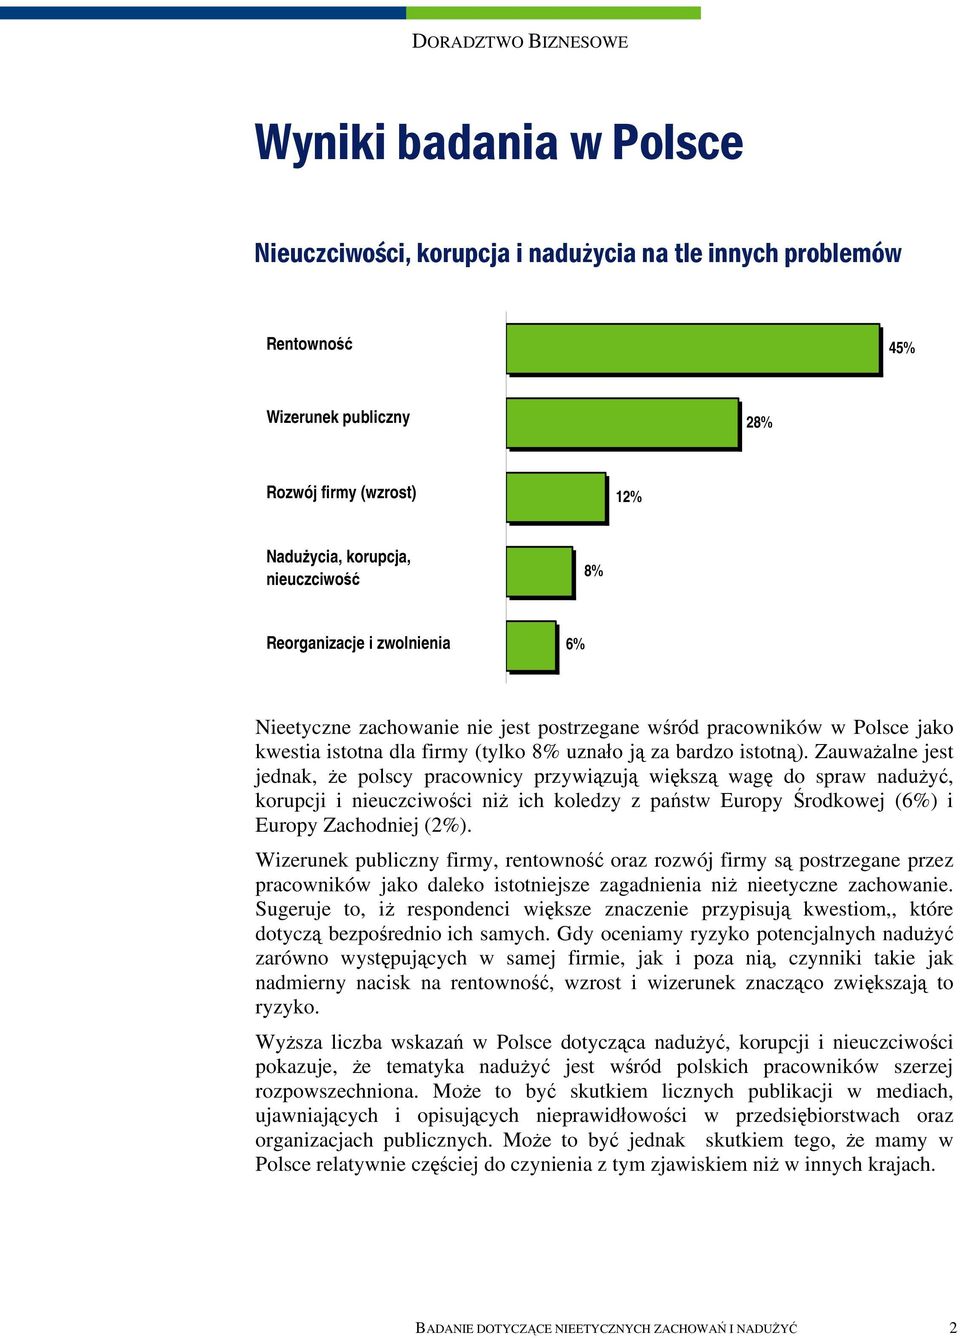 Zauważalne jest jednak, że polscy pracownicy przywiązują większą wagę do spraw nadużyć, korupcji i nieuczciwości niż ich koledzy z państw Europy Środkowej (6%) i Europy Zachodniej (2%).